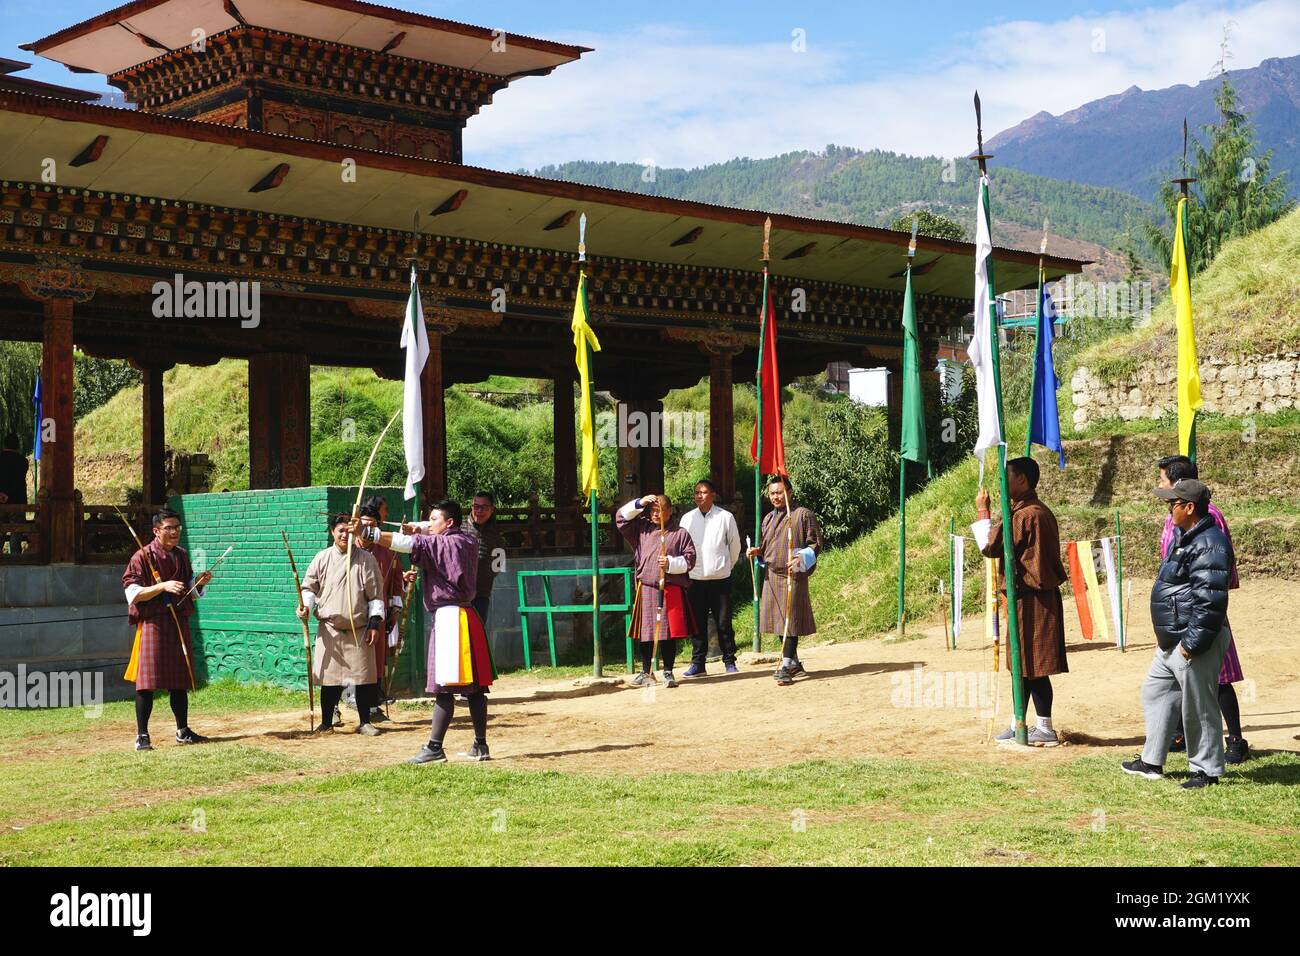 Bhutanische Bogenschützen warten auf ihren Zug, als ein Teammitglied seinen nächsten Schuss in Thimphu, Bhutan, anstellt. Bogenschießen ist der nationale Sport des Königreichs Bhutan. Stockfoto